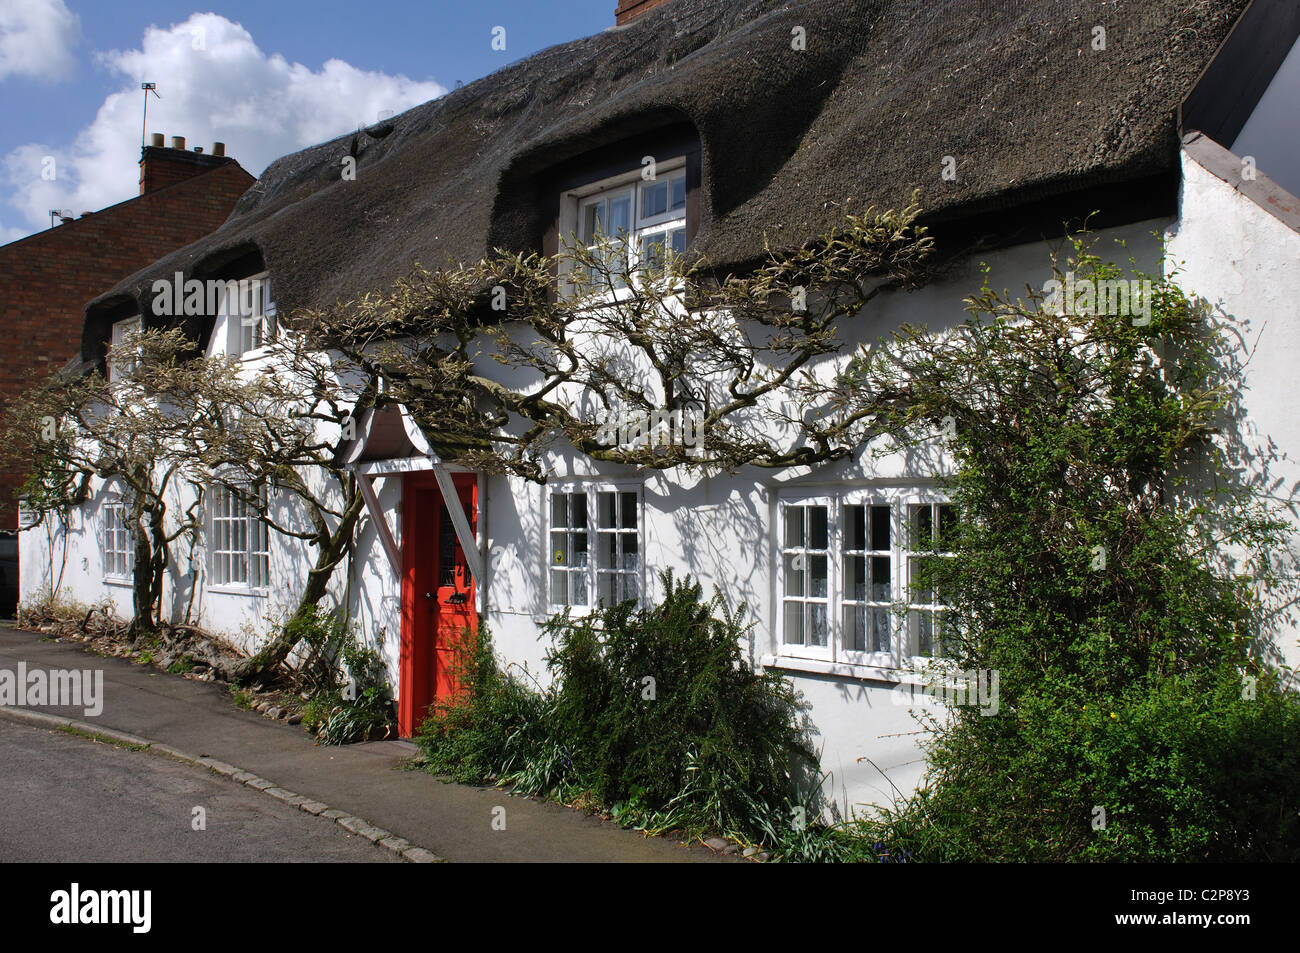 Une chaumière en Desford village, Leicestershire Angleterre UK Banque D'Images